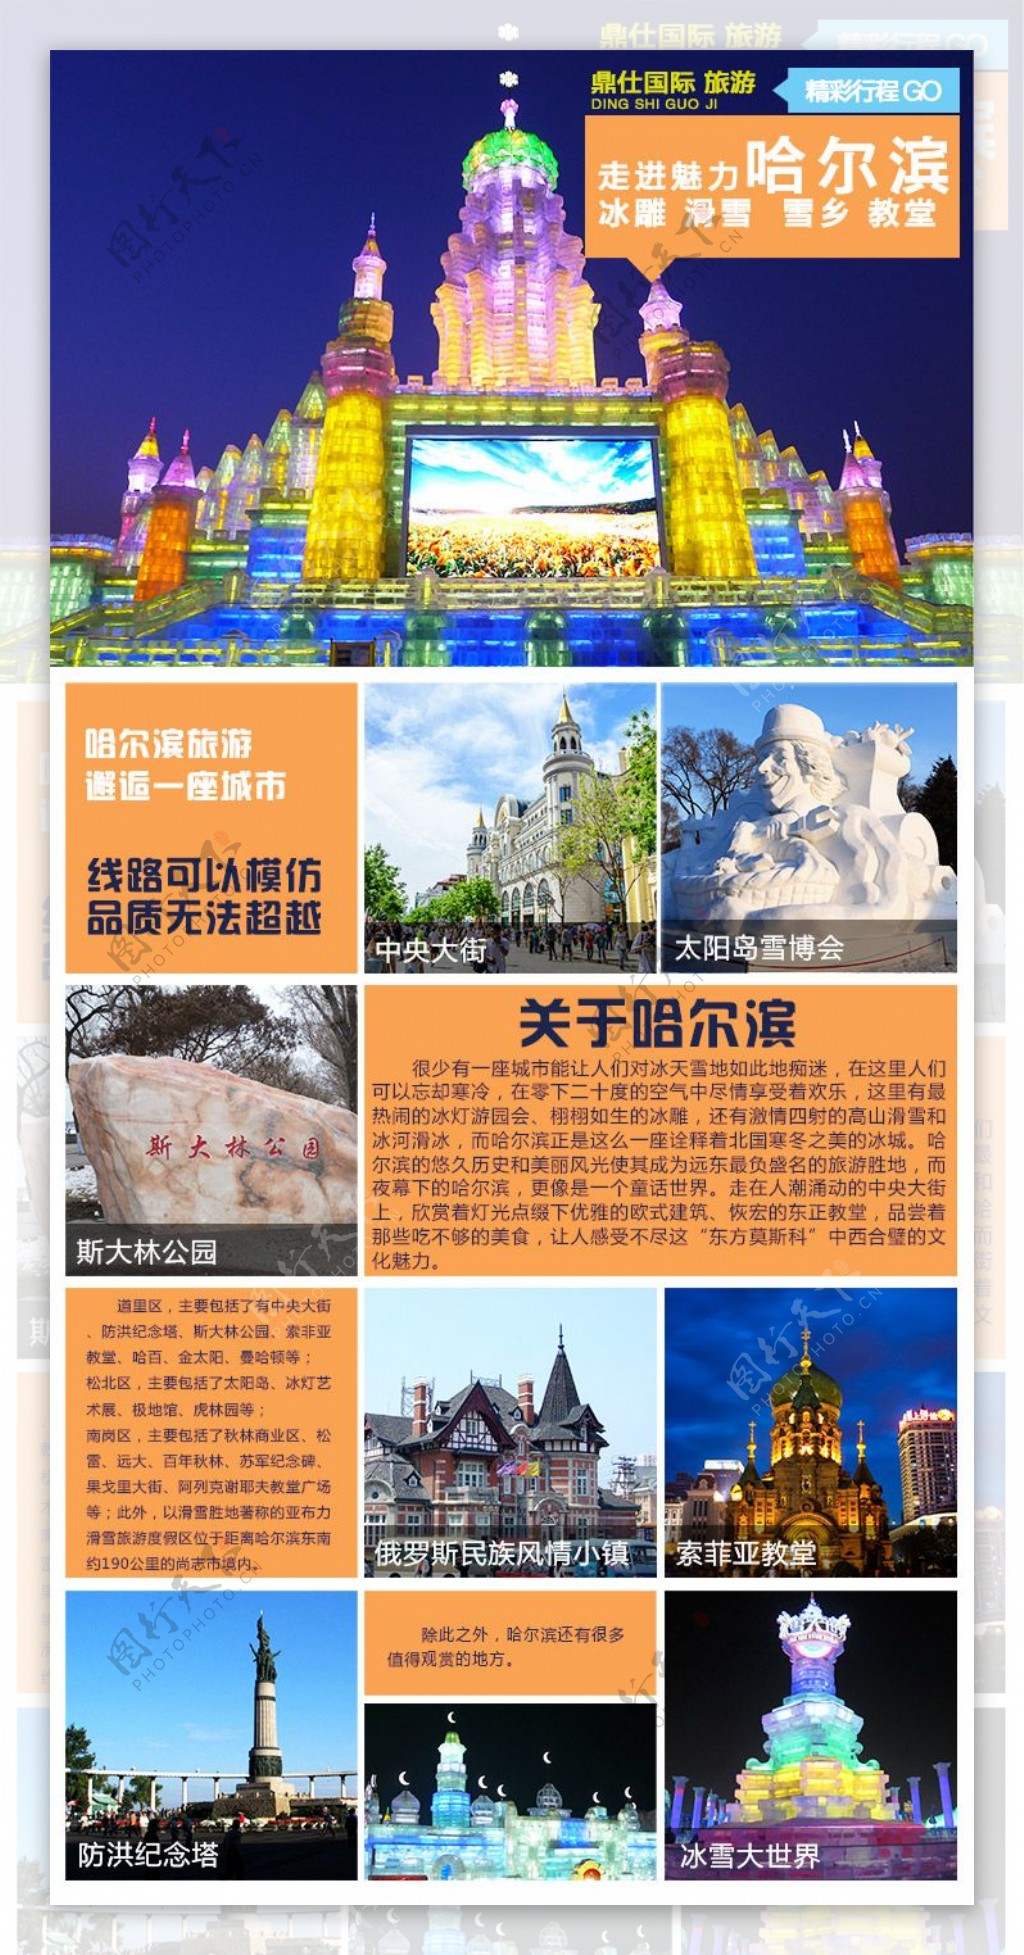 哈尔滨旅游景点介绍详情海报模版